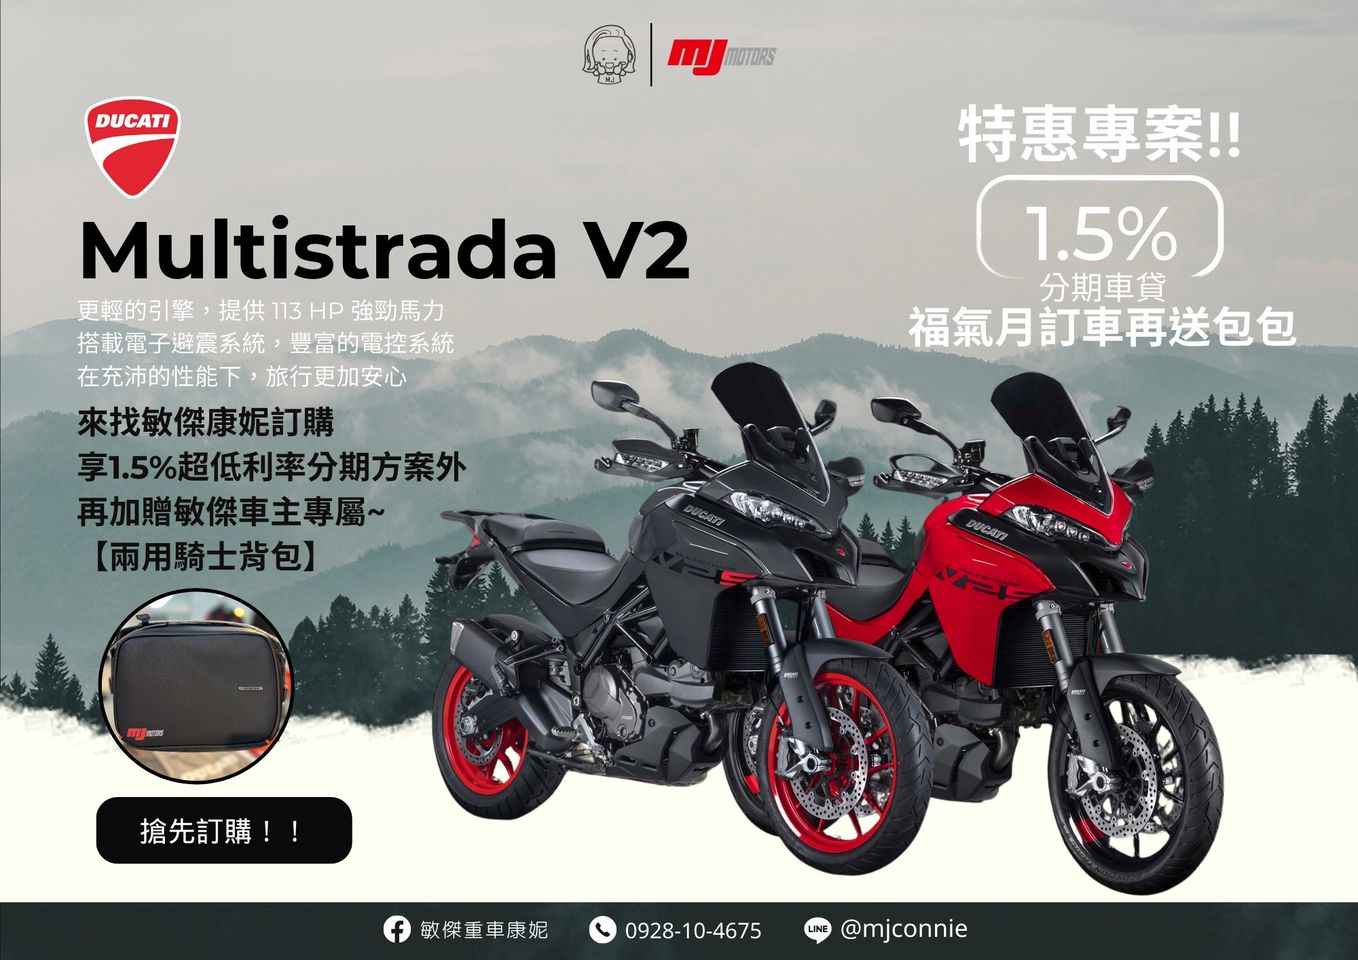 【敏傑車業資深銷售專員 康妮 Connie】DUCATI Multistrada 950 - 「Webike-摩托車市」 『敏傑康妮』Ducati Multistrada V2 最安全的電控 現在再給您史上最低貸款利率1.5%